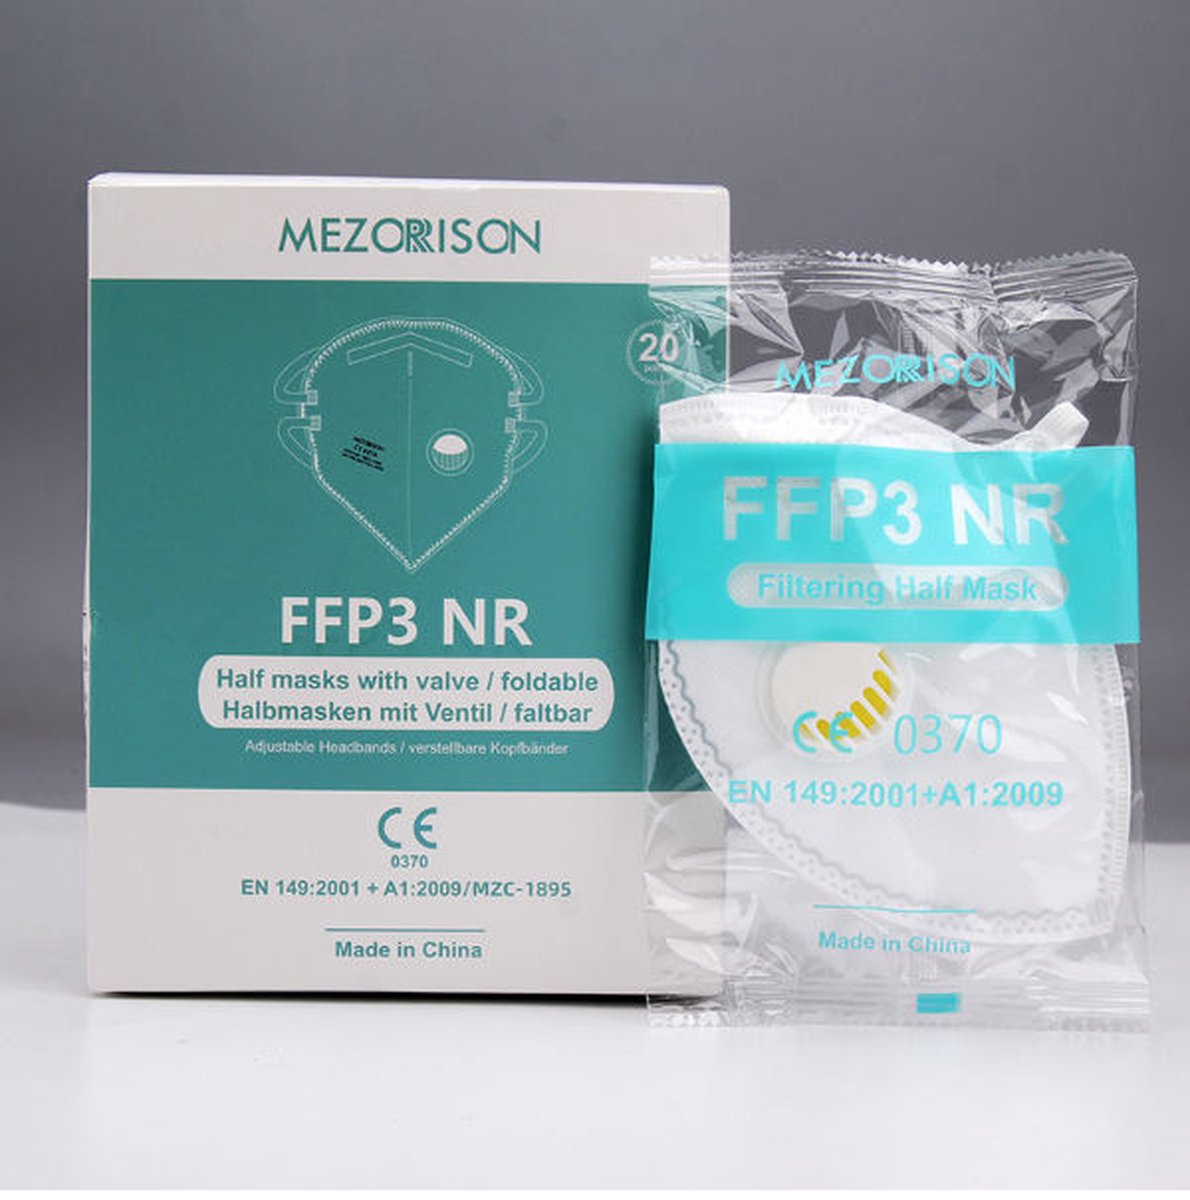 Mezorrison FFP3 Mondkapje met ventiel - Mondmasker stofmasker hoogste kwaliteit